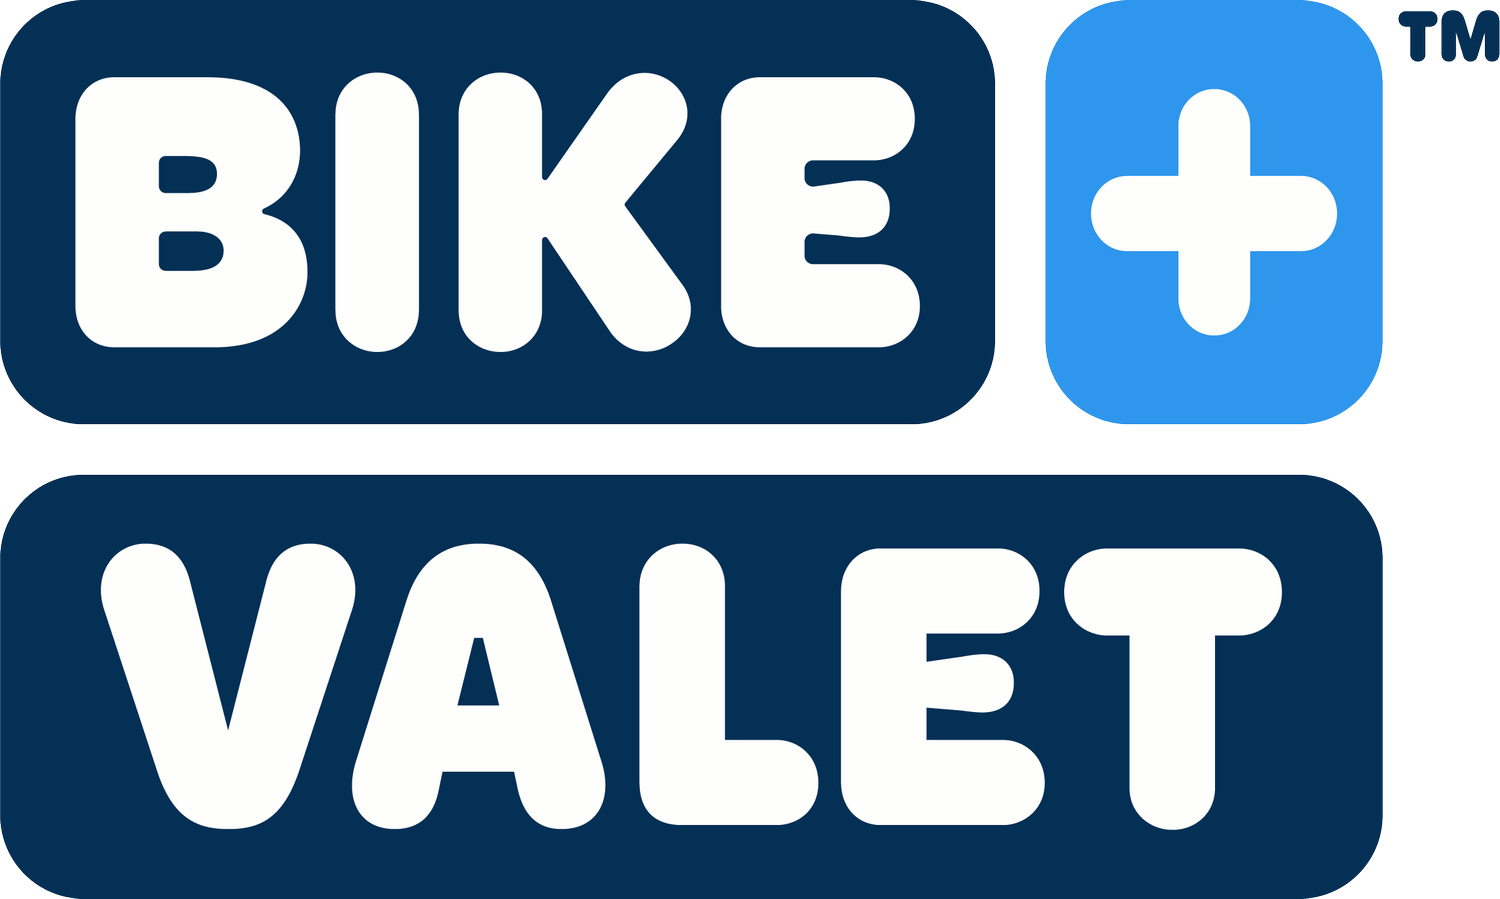 Bicycle Valet